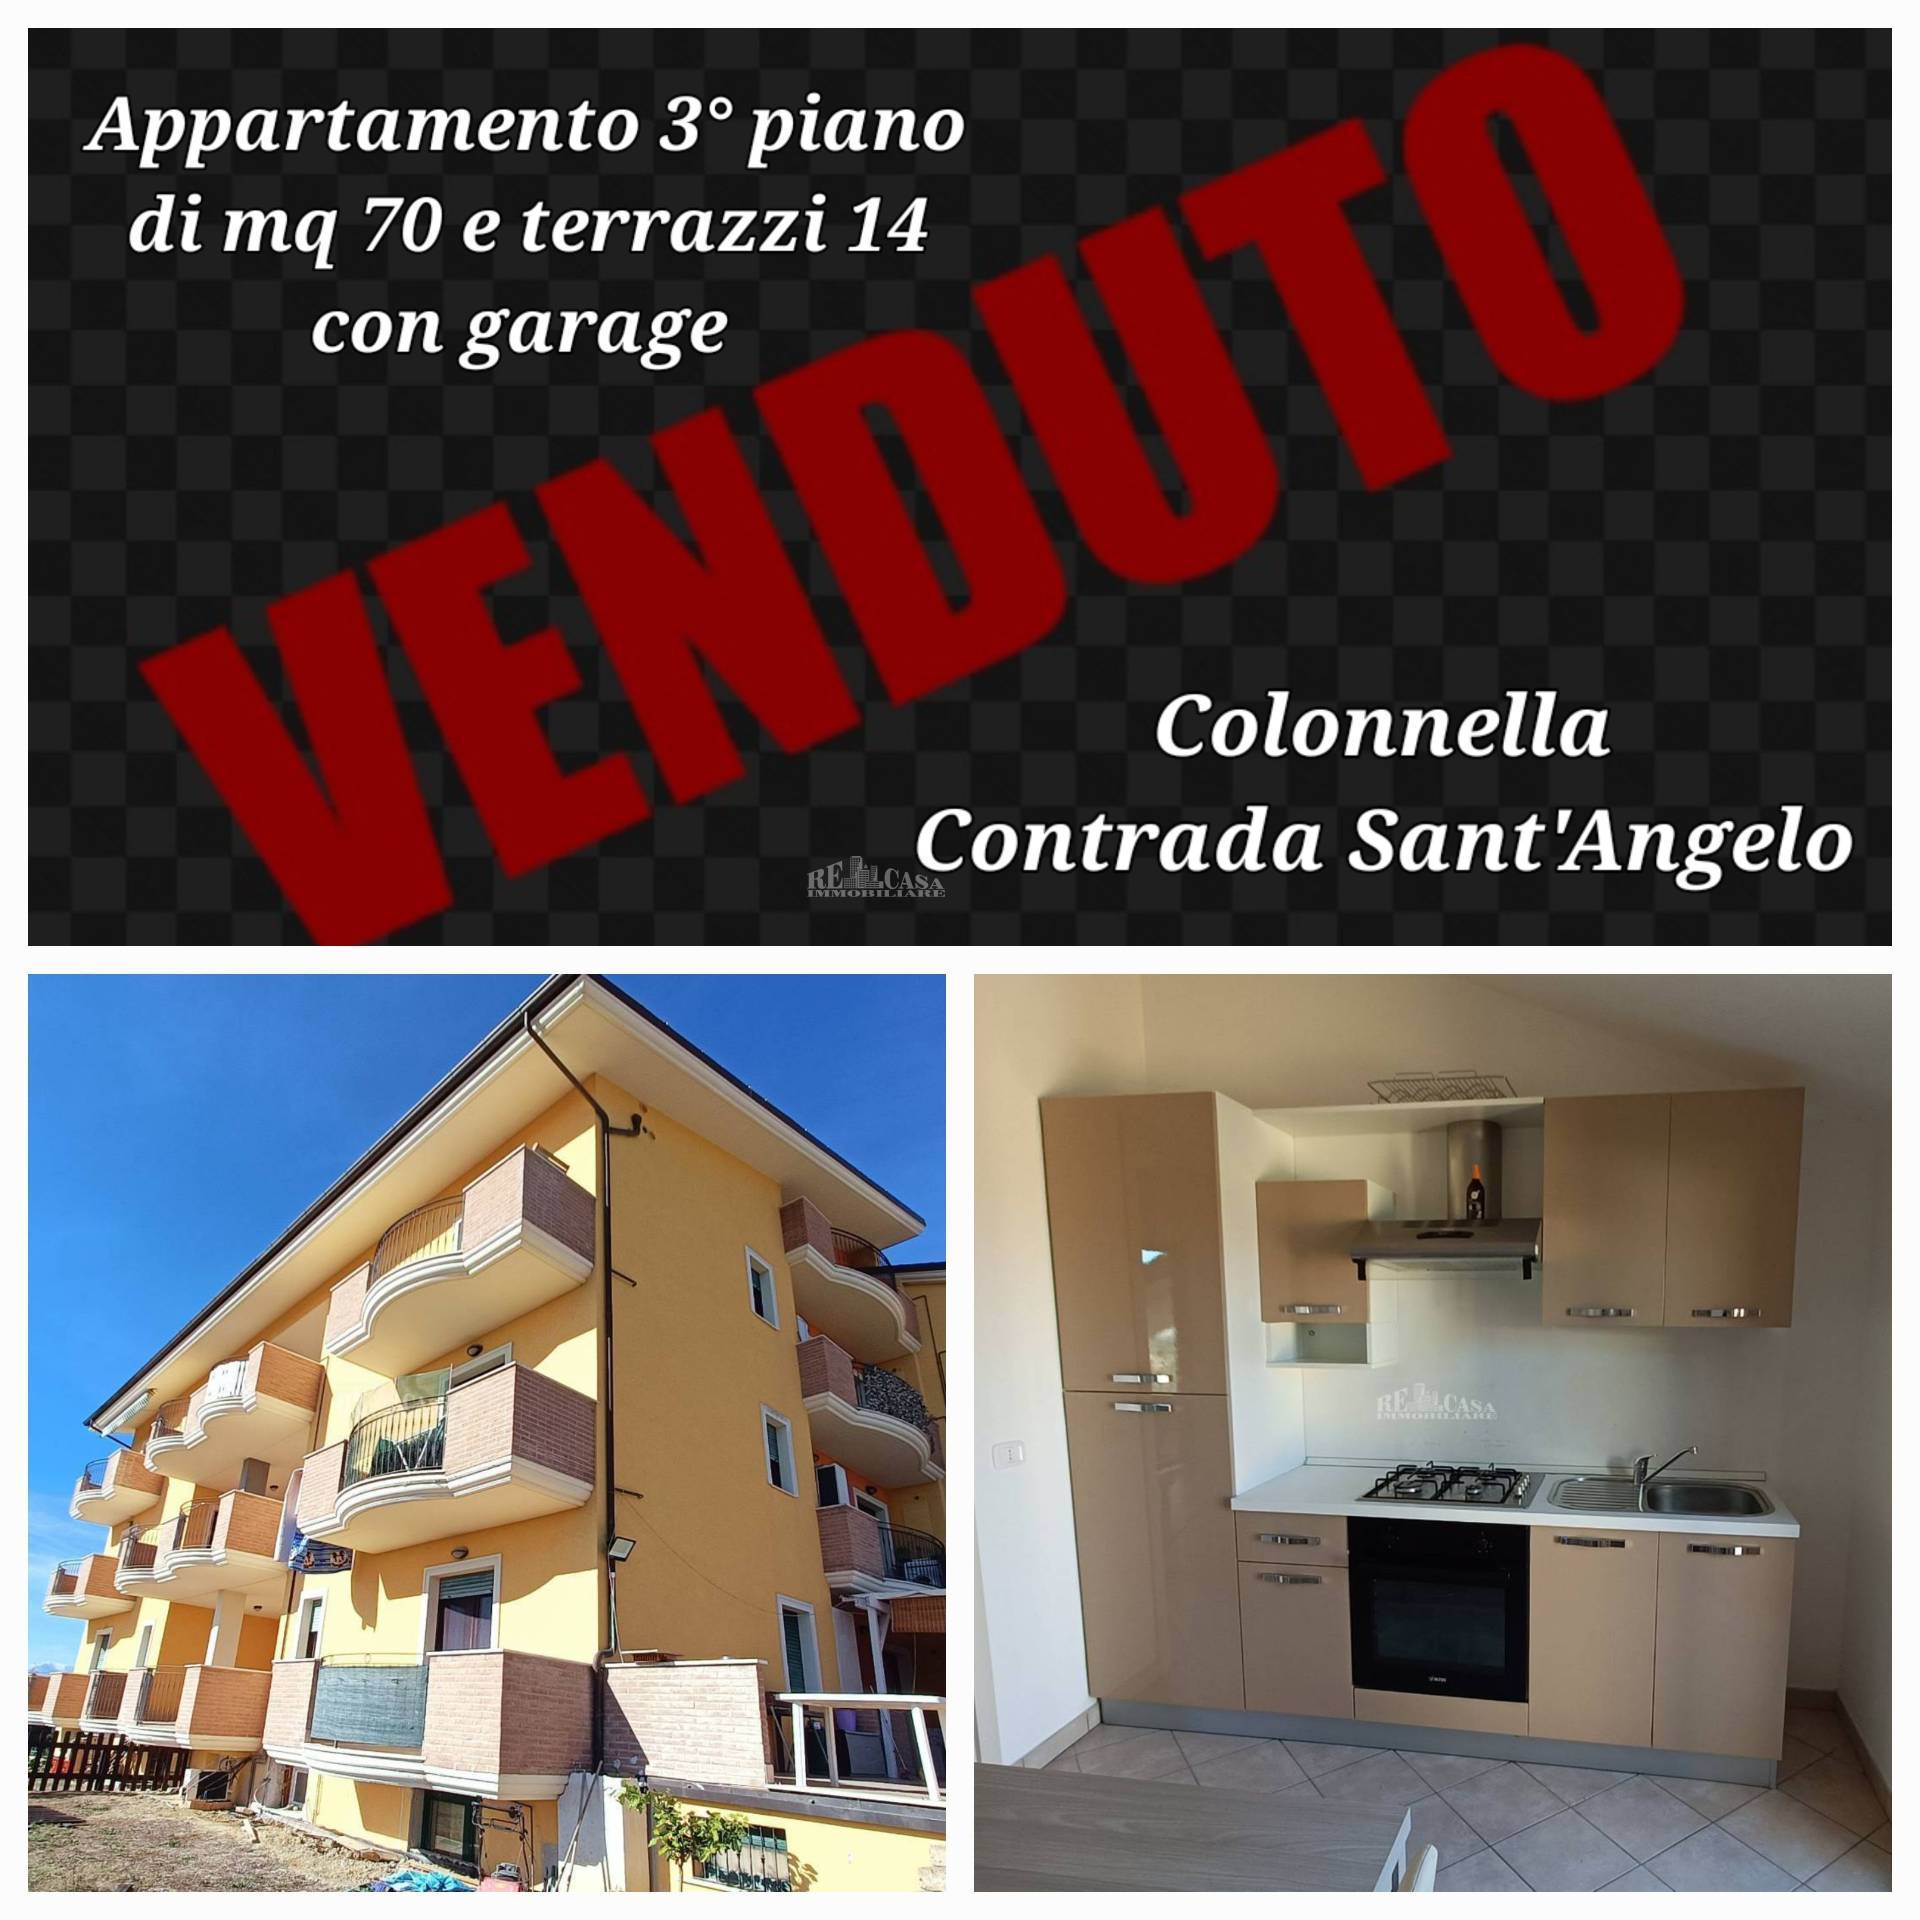 Appartamento in vendita a Colonnella, 3 locali, prezzo € 52.000 | PortaleAgenzieImmobiliari.it